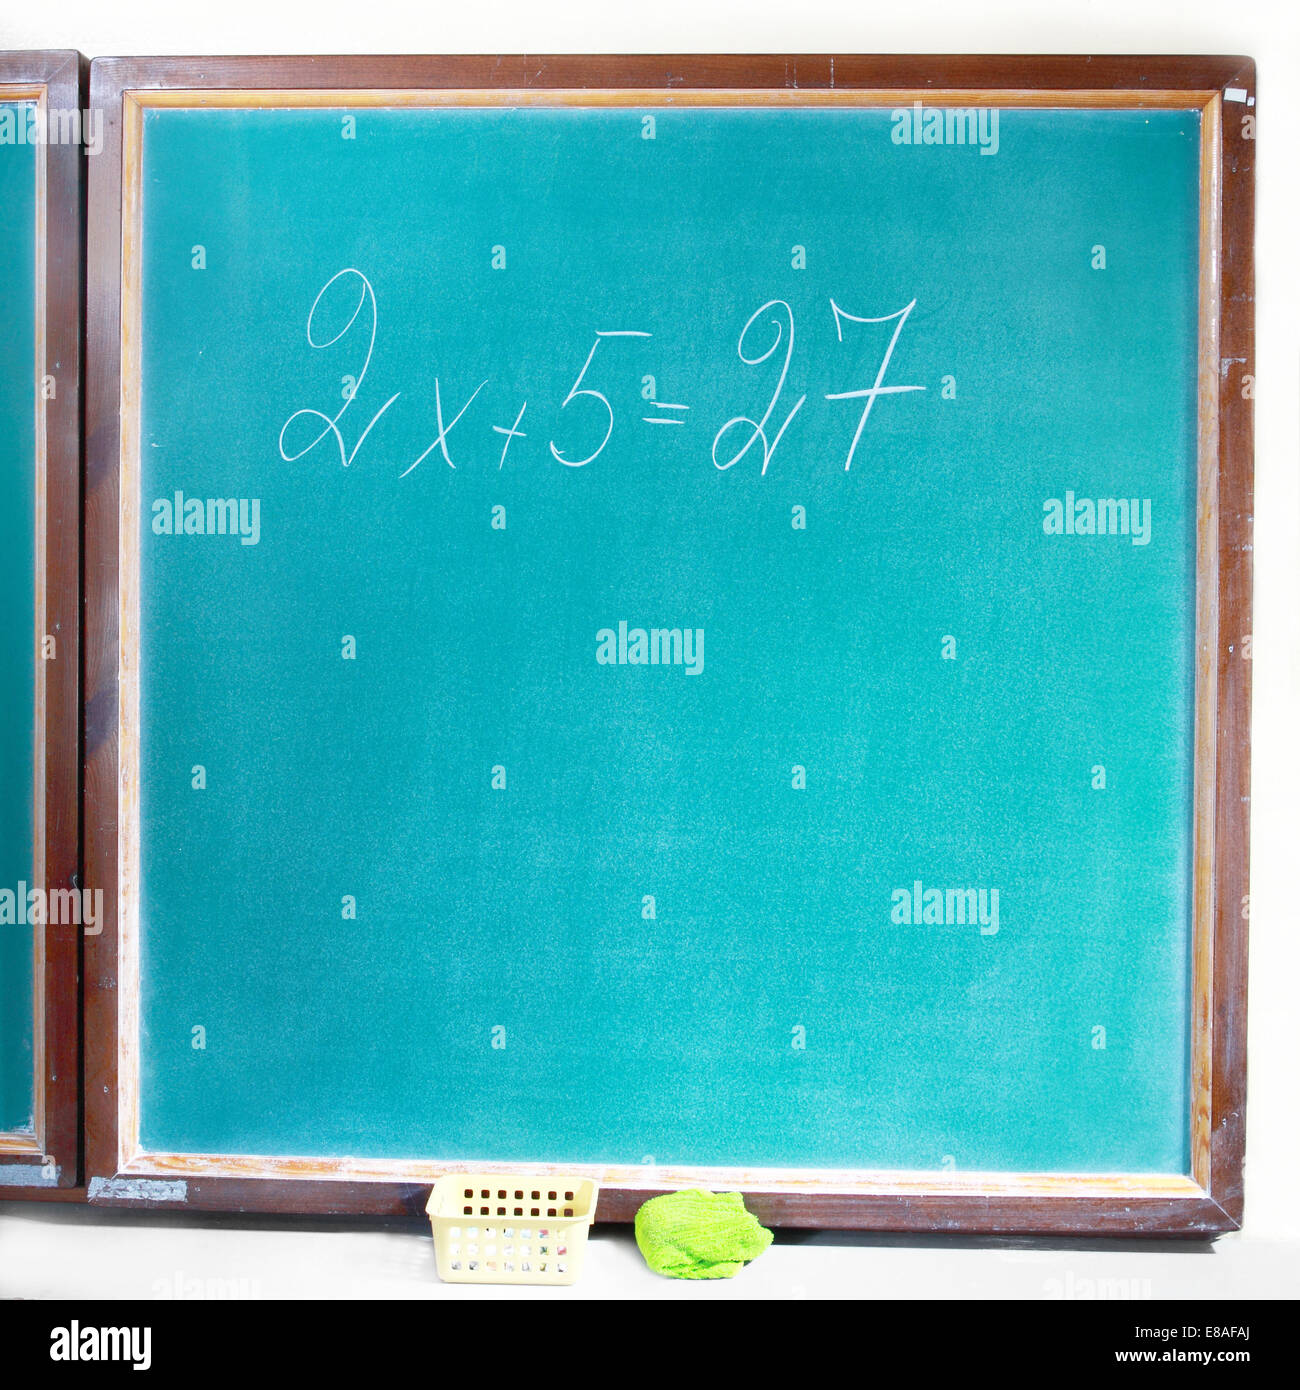 Tableau noir de l'école avec l'équation écrit dessus Banque D'Images